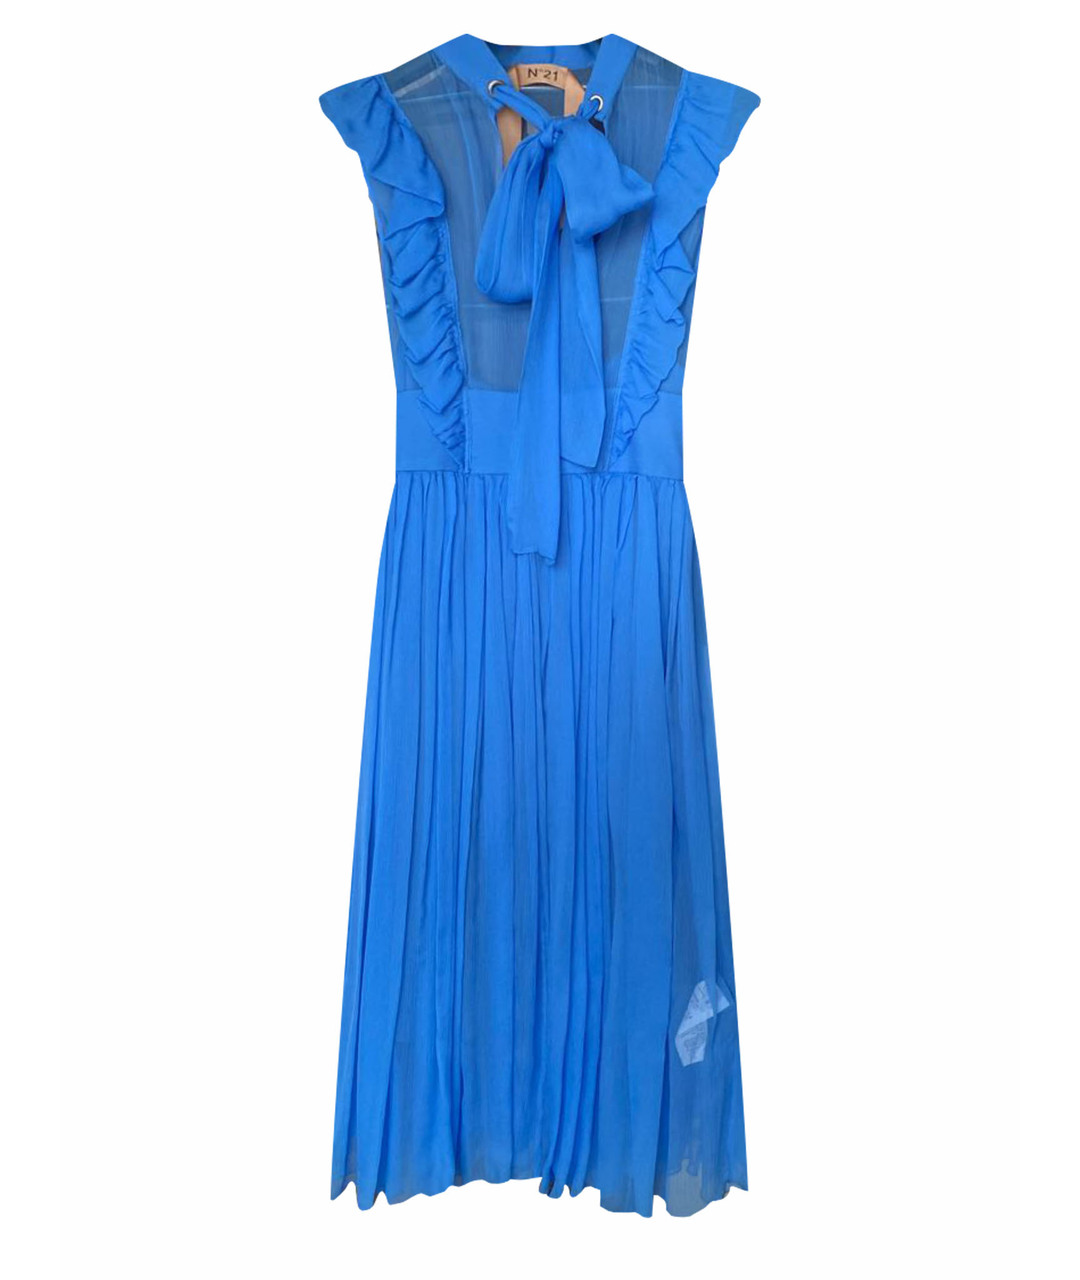 №21 Голубое шелковое повседневное платье, фото 1